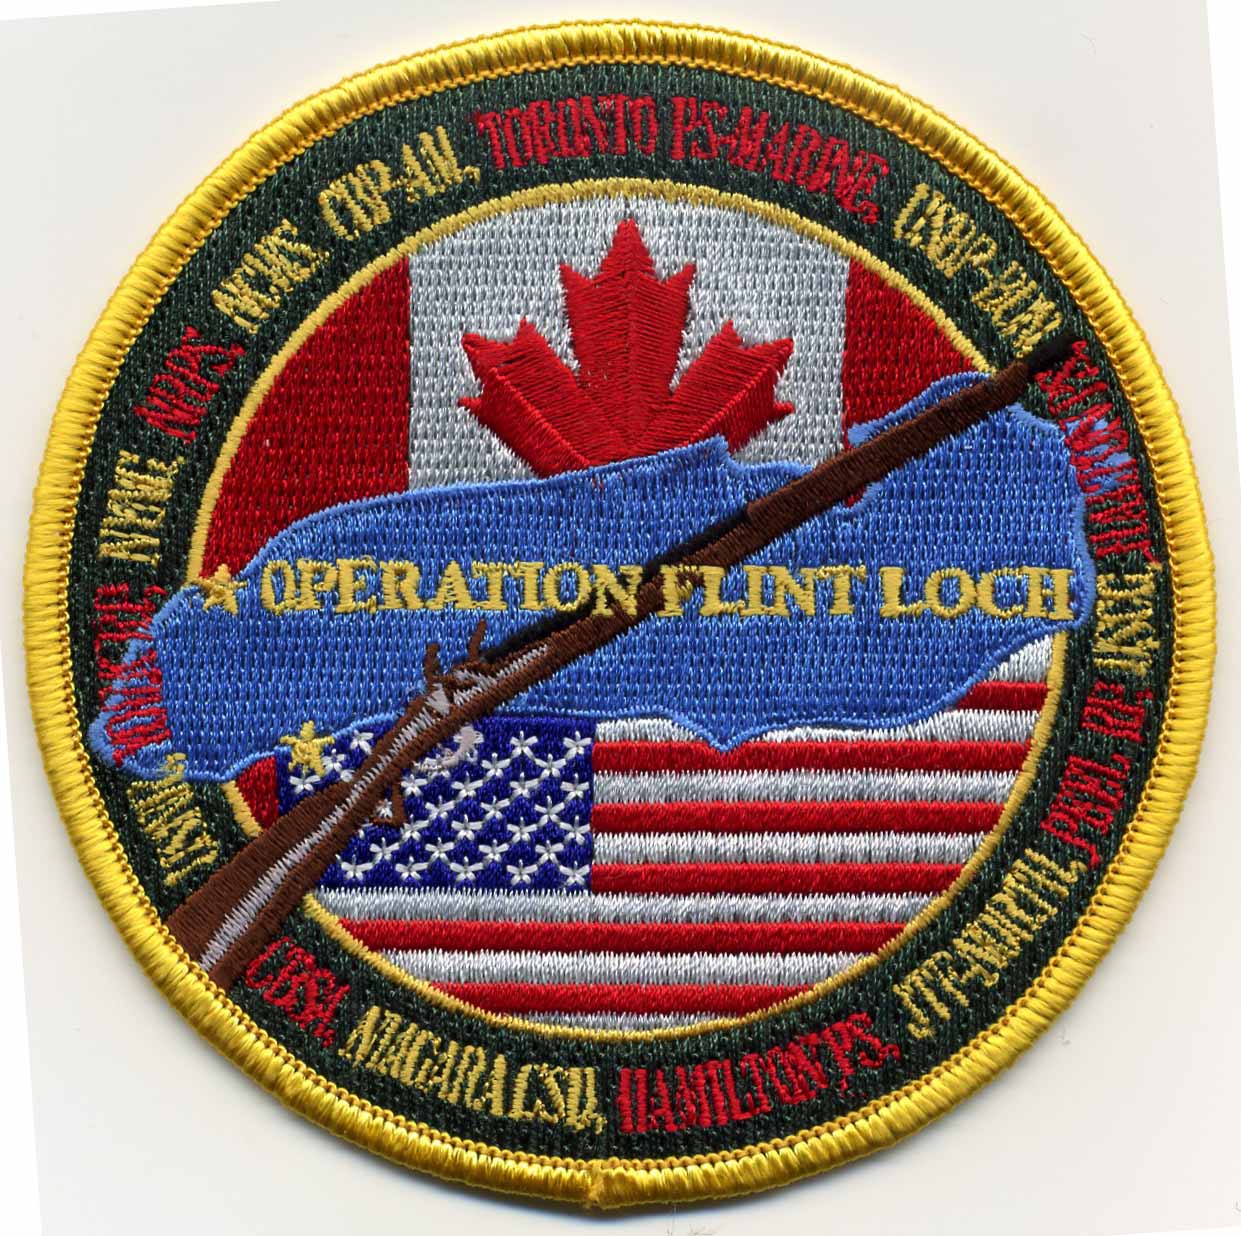 Operation Flint Loch